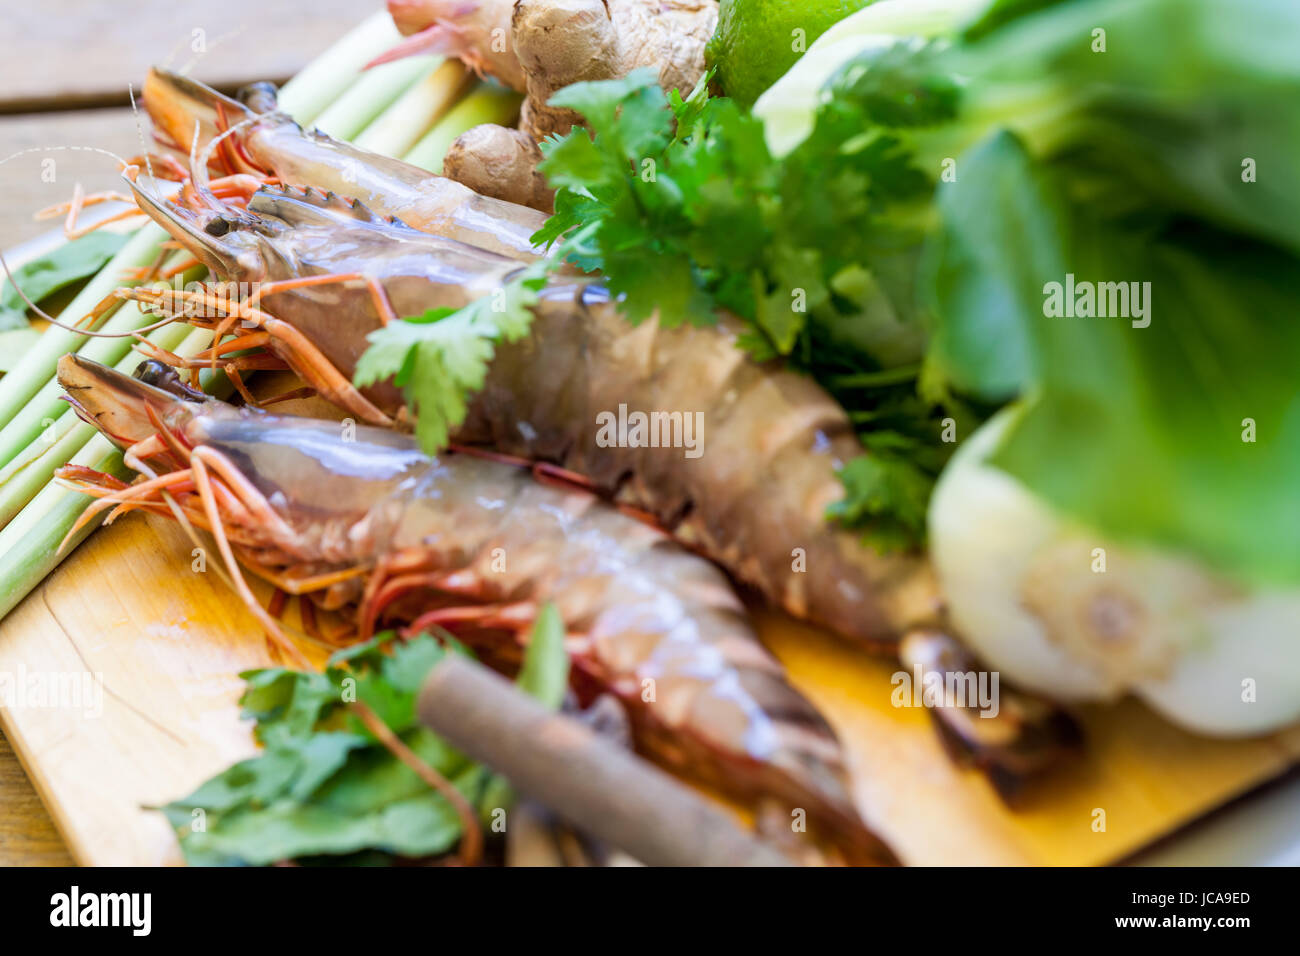 Zutaten für Tom Yam Suppe mit Zitronengras Garnelen Koriander auf einem Küchenbrett Stock Photo